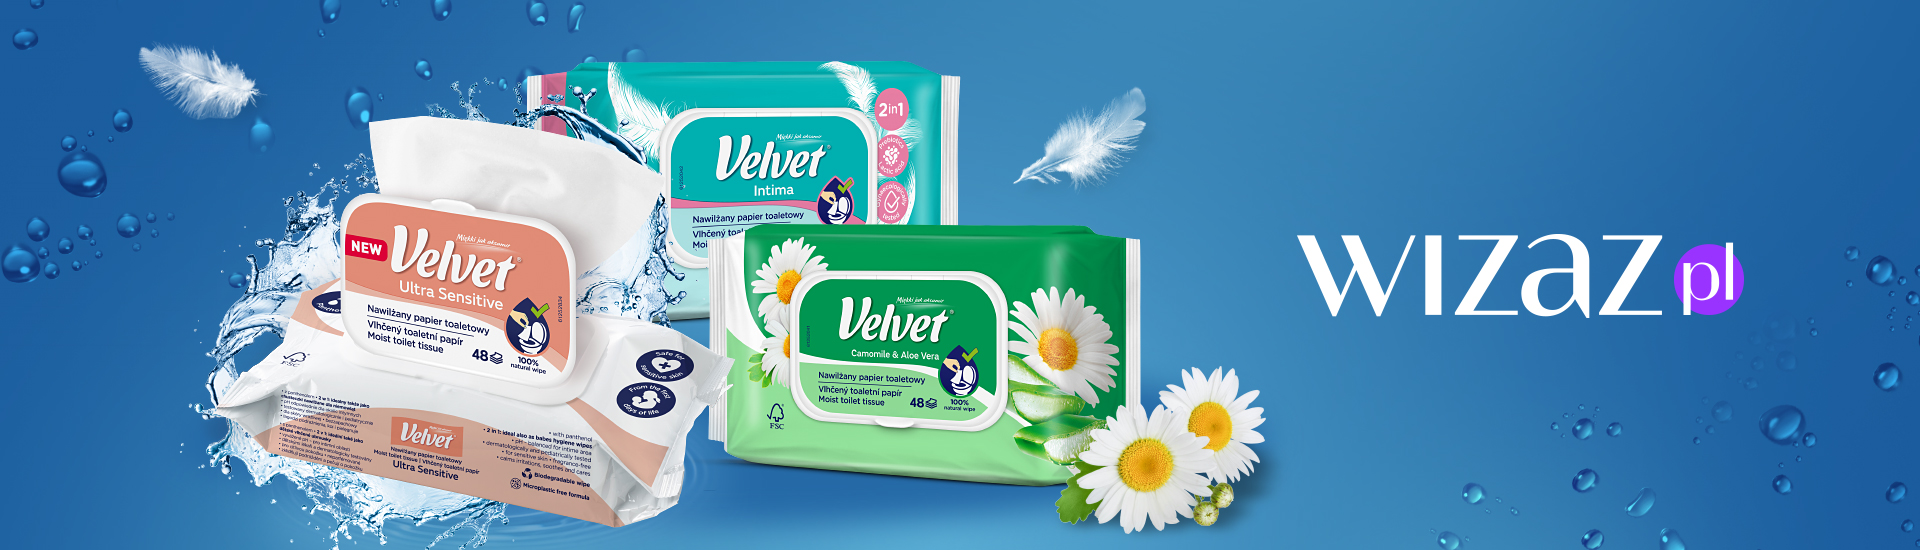 Nowy standard w higienie – Nawilżane papiery toaletowe Velvet zostały ocenione przez Recenzentki!